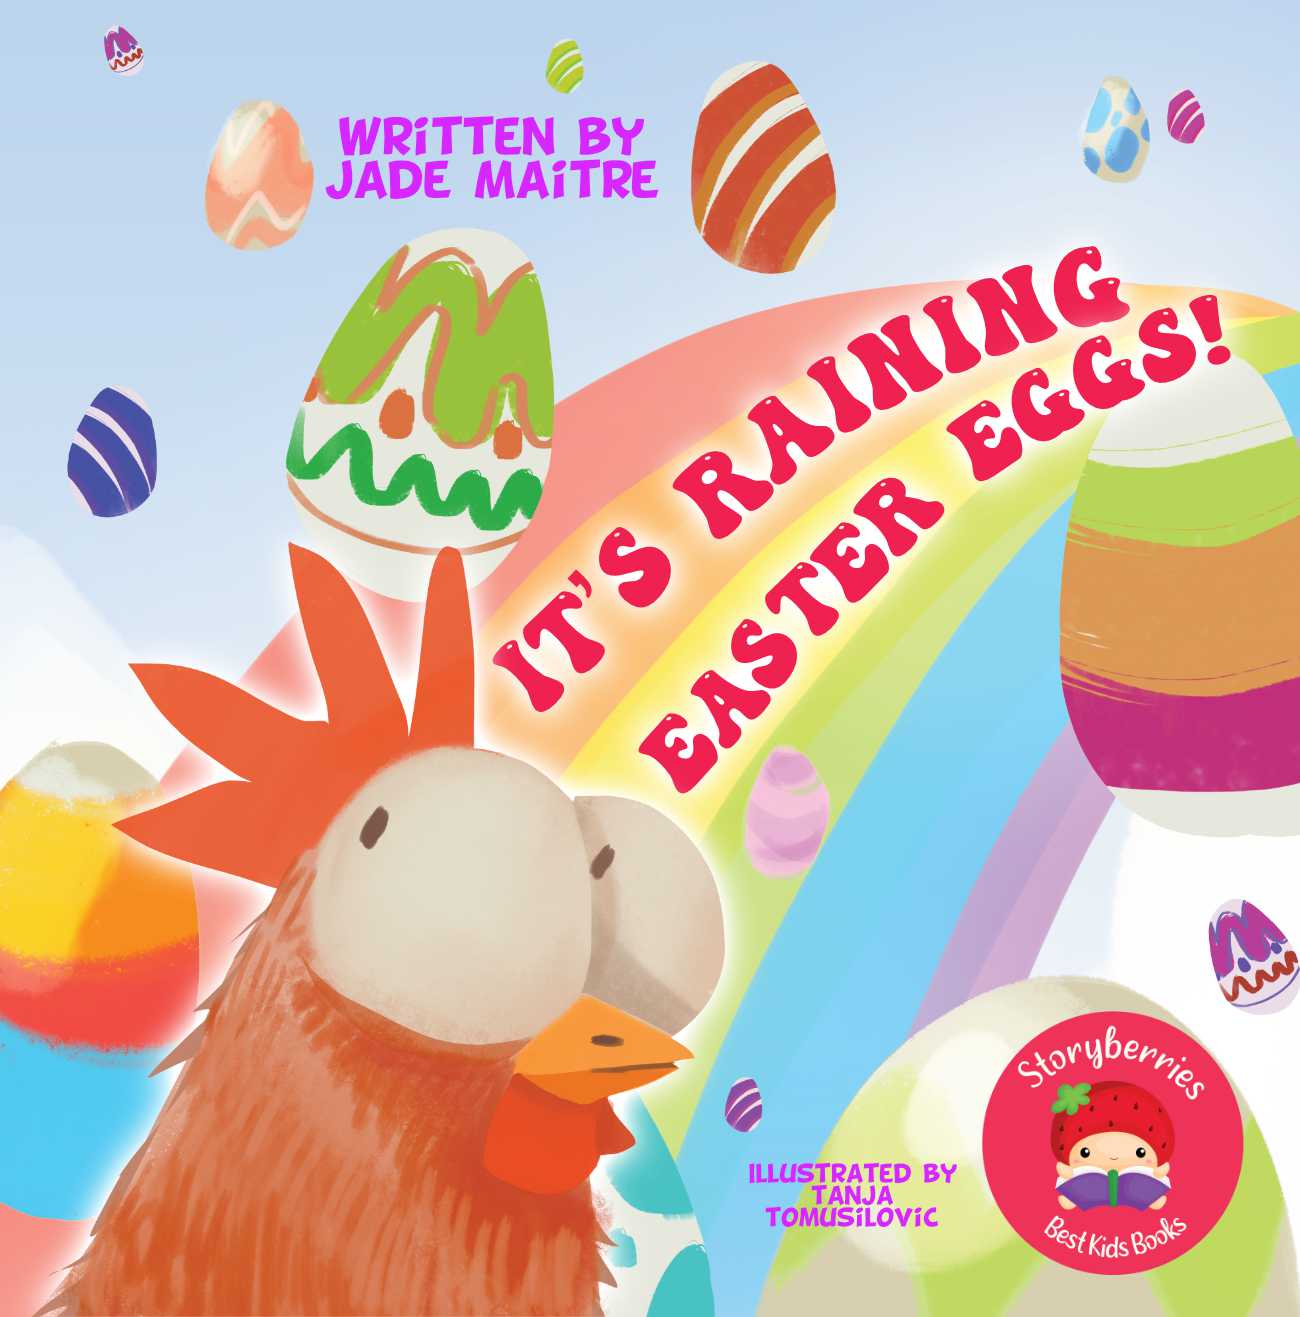 Easter bedtime stories It's Raining Easter Eggs by Jade Maitre short stories for kids cover